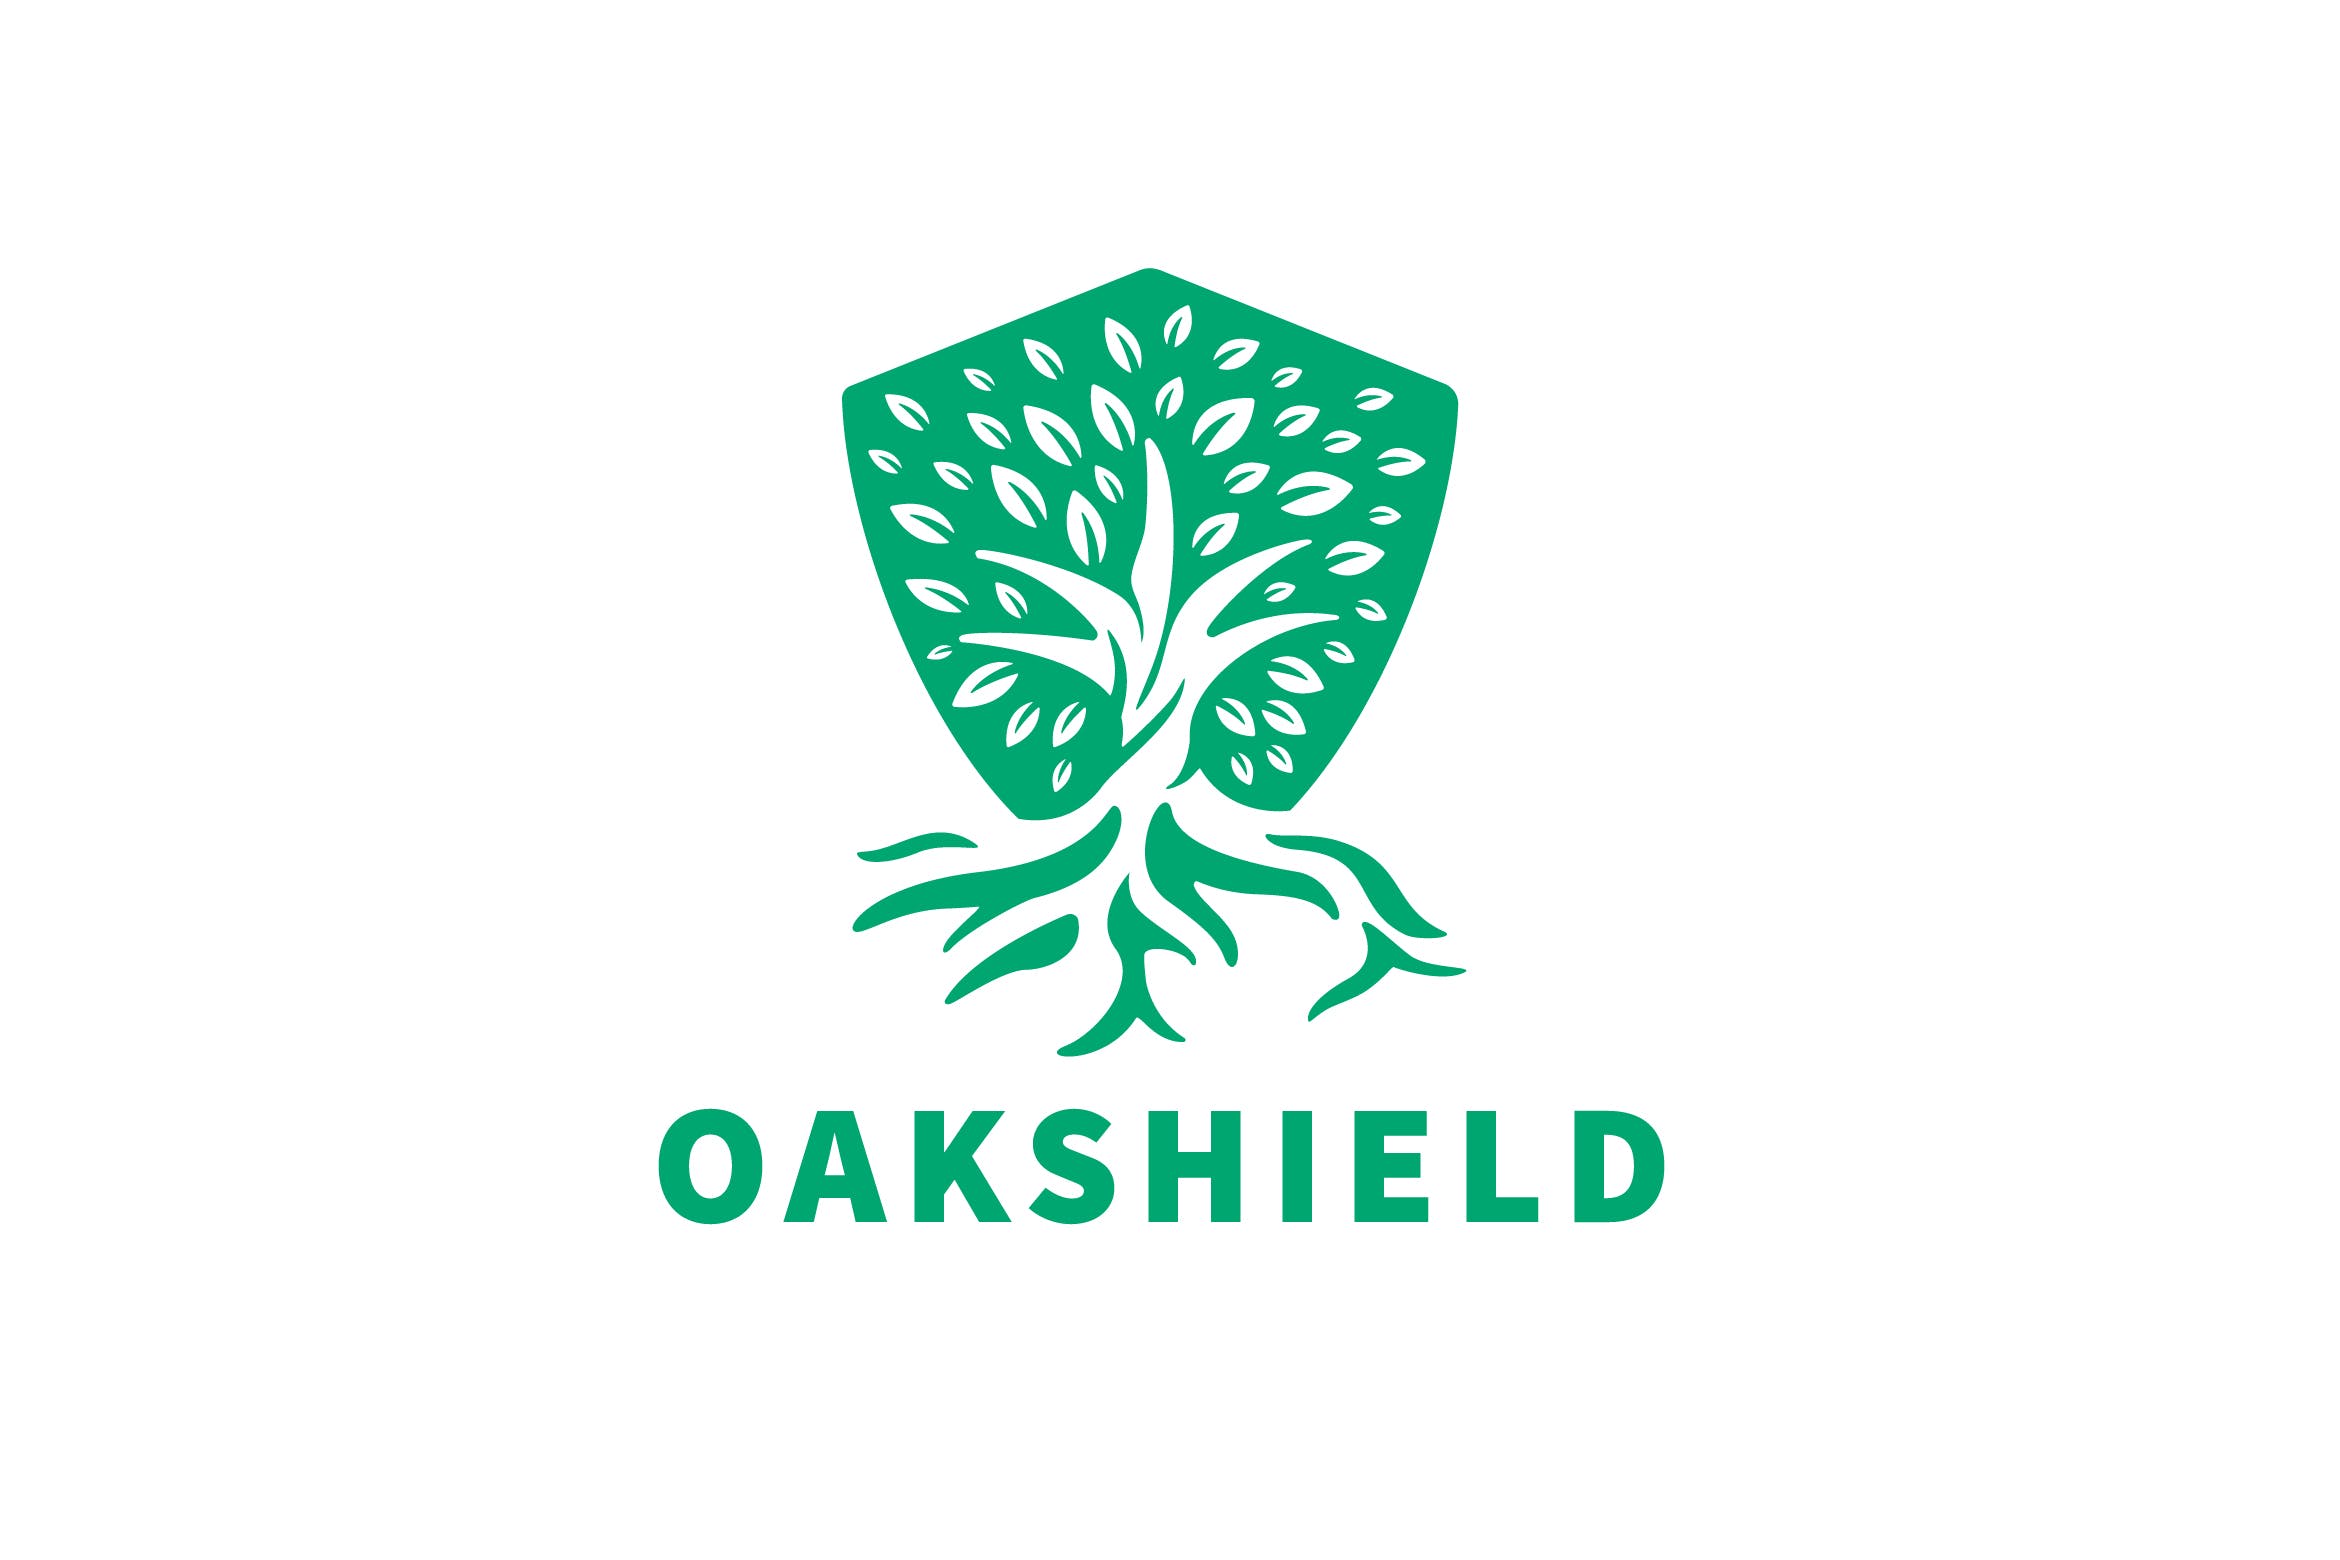 负空间设计风格橡木盾几何图形Logo设计第一素材精选模板 Oak Shield Negative Space Logo插图